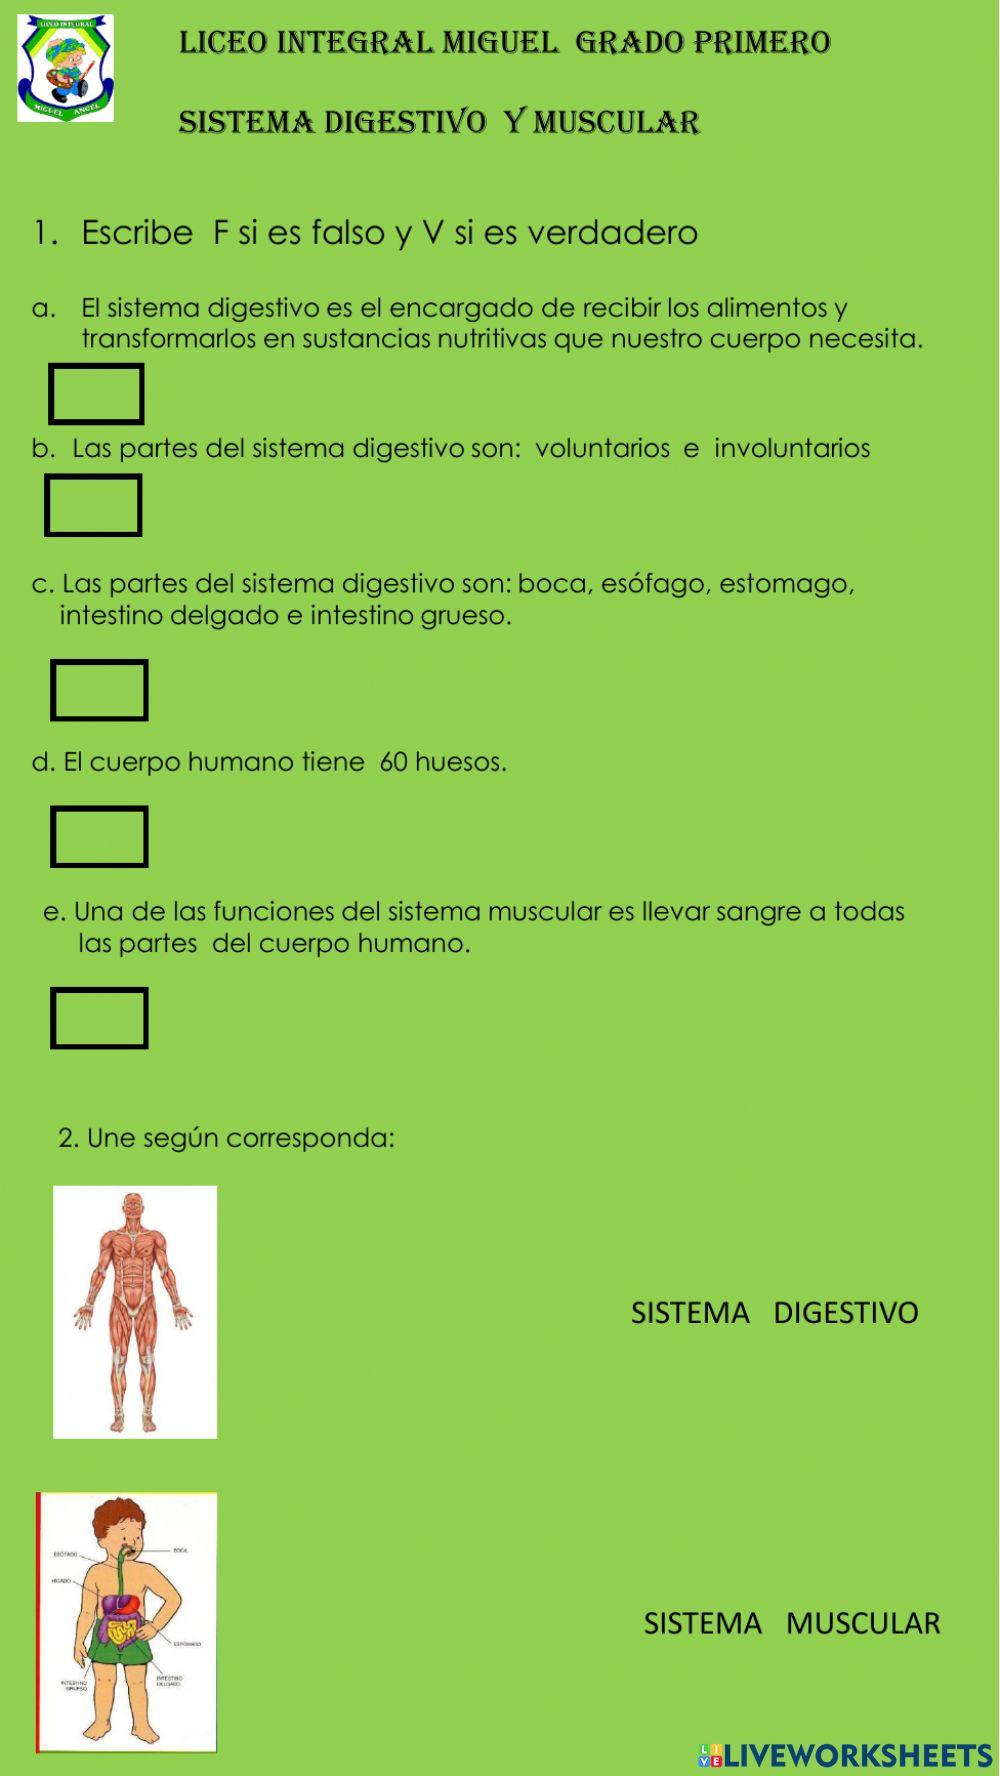 Sistema digestivo y muscular